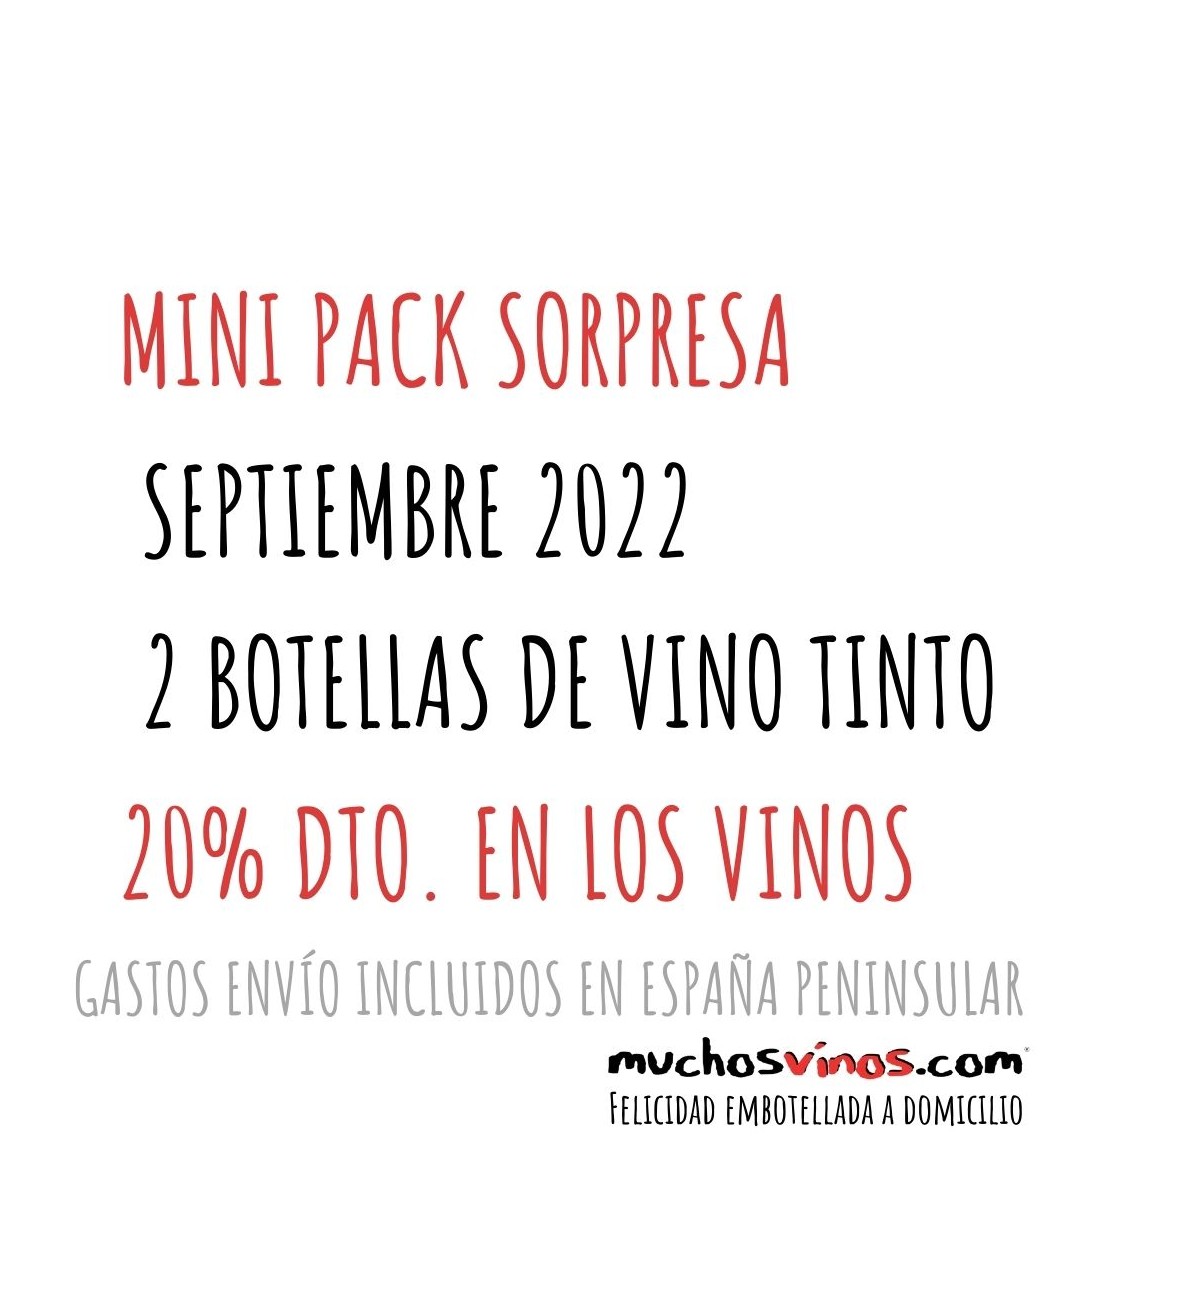 Mini Pack Sorpresa Septiembre 2022 - 2 vinos tintos con 20% Dto. + Envío incluido en España Peninsular. muchosvinos.com